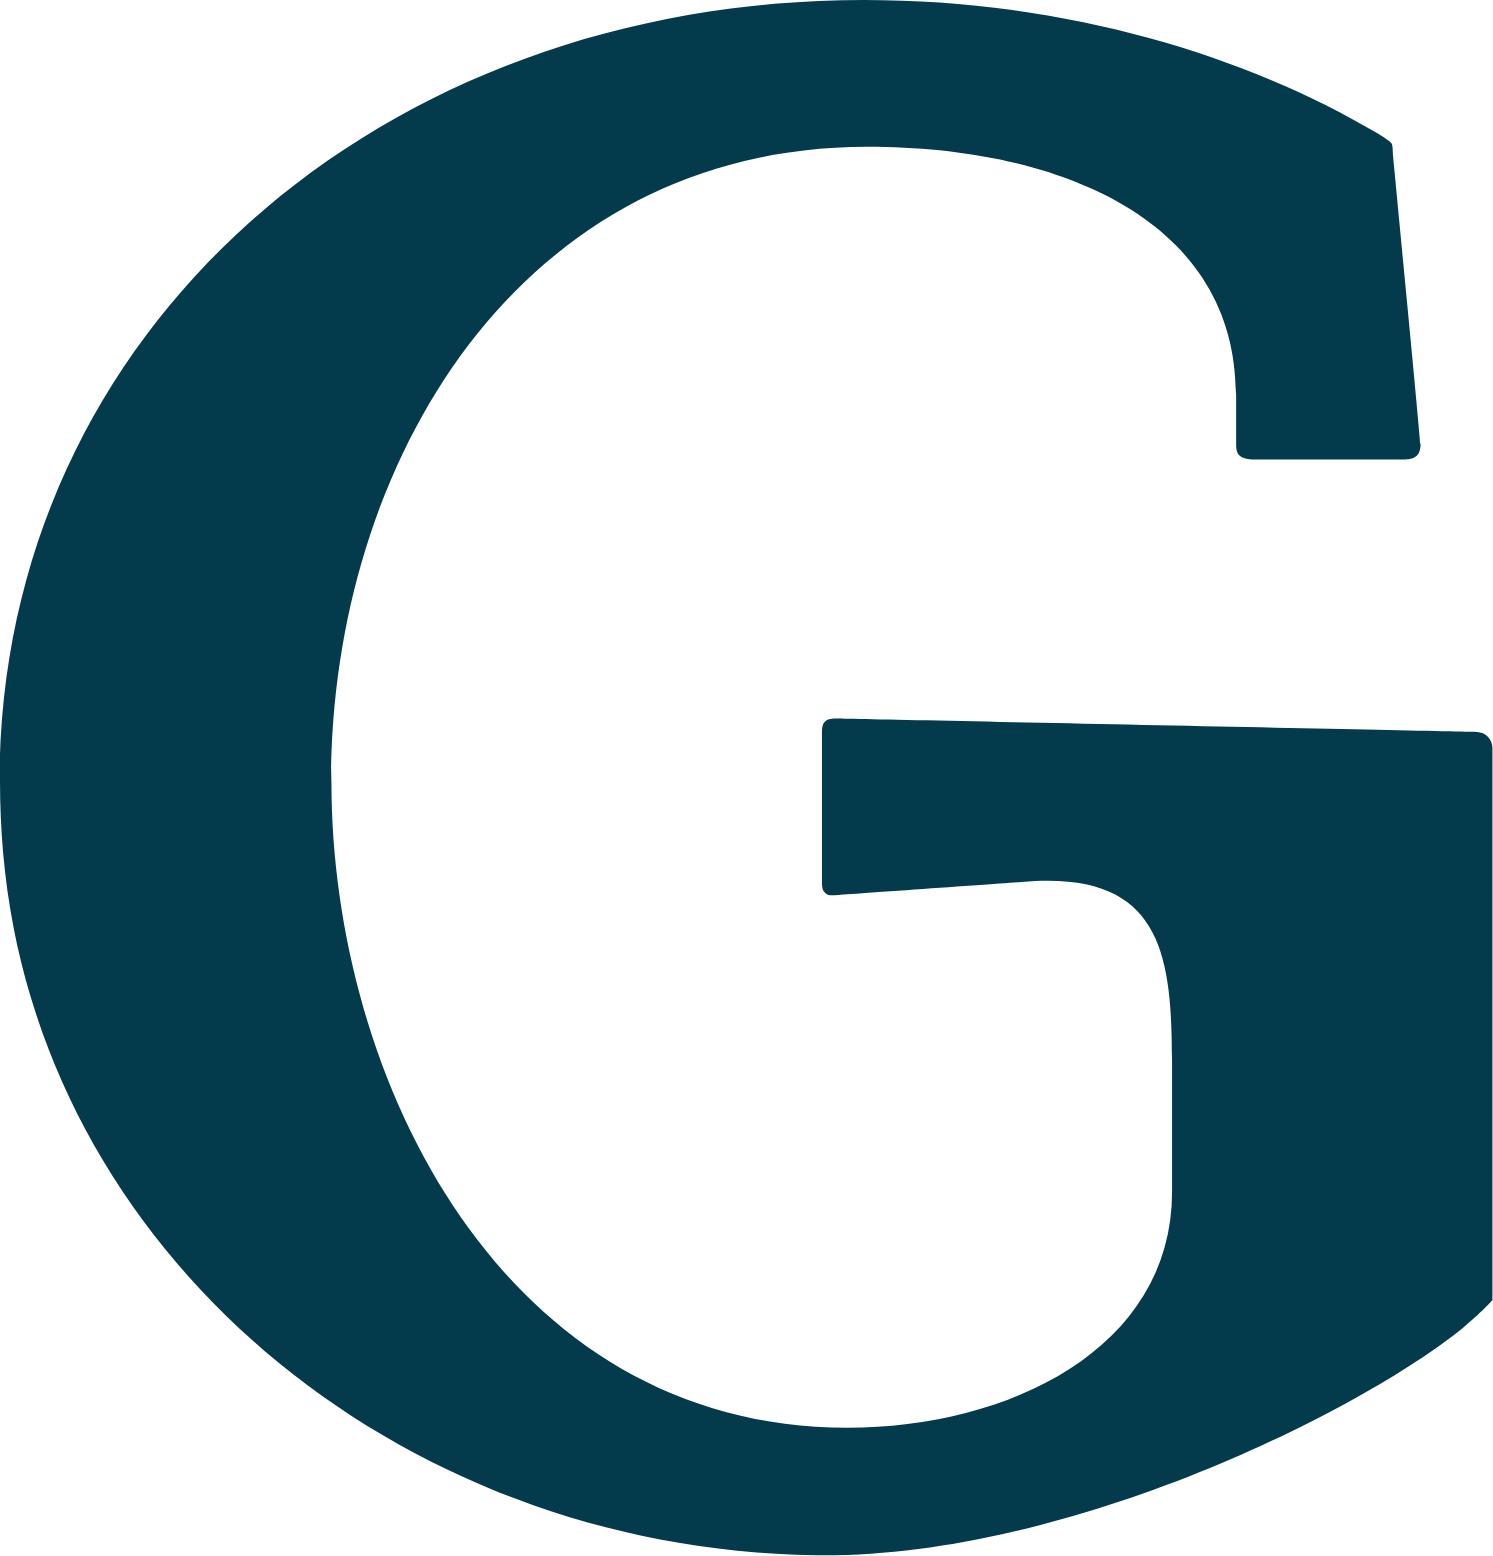 Grove Collaborative Logo (transparentes PNG)